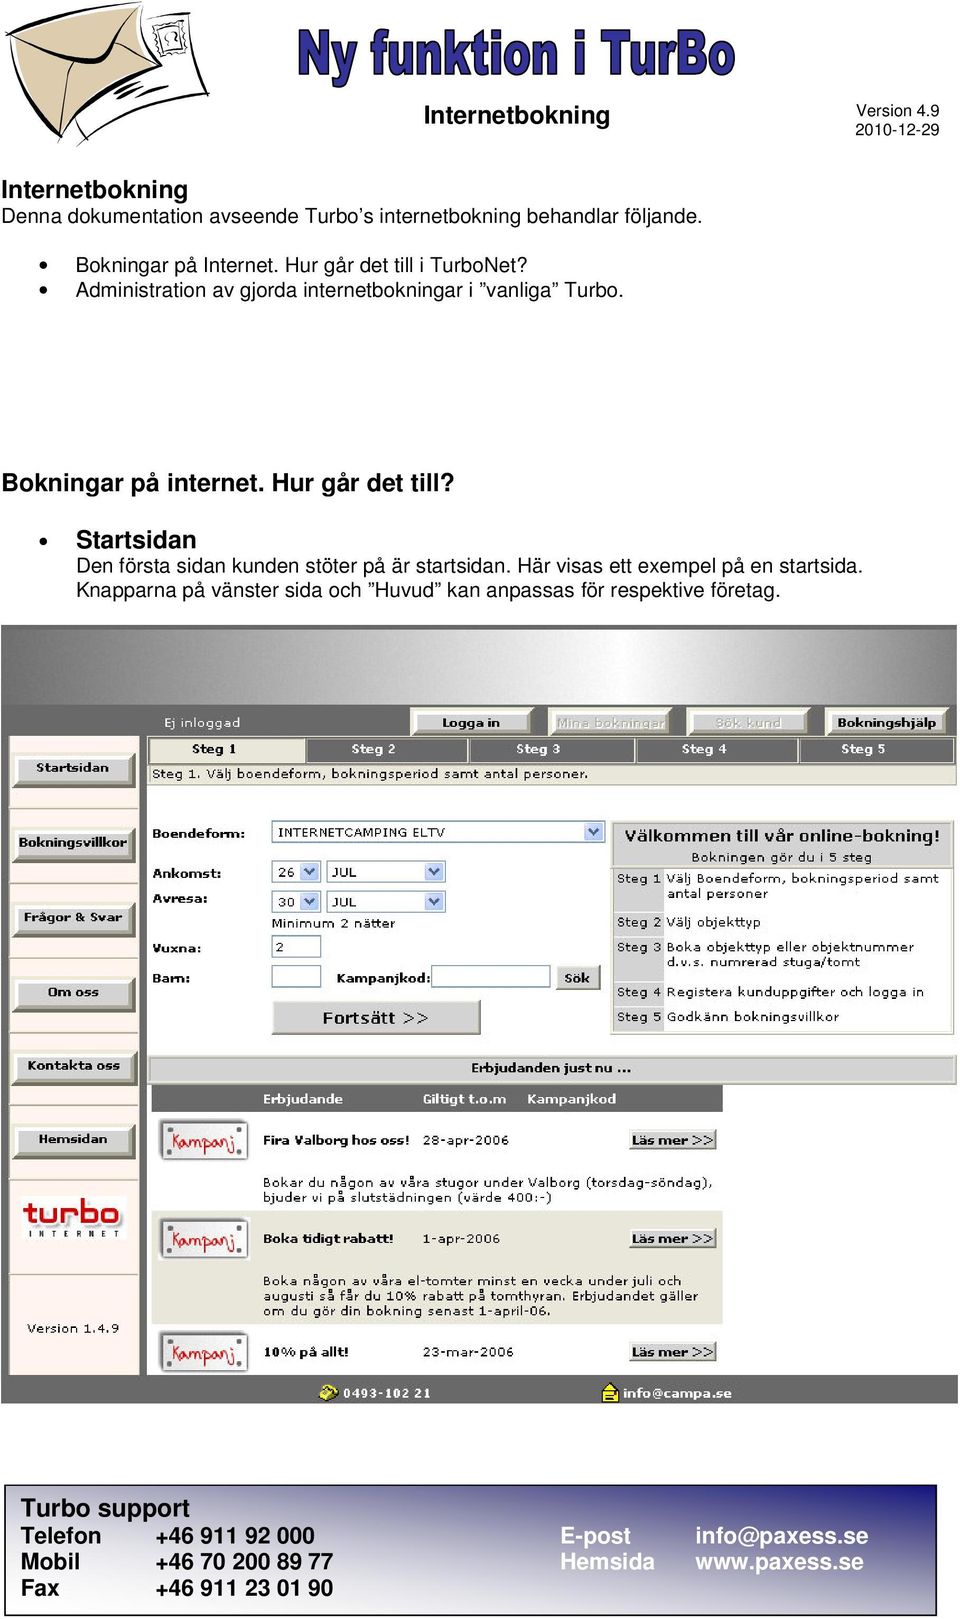 Administration av gjorda internetbokningar i vanliga Turbo. Bokningar på internet. Hur går det till?